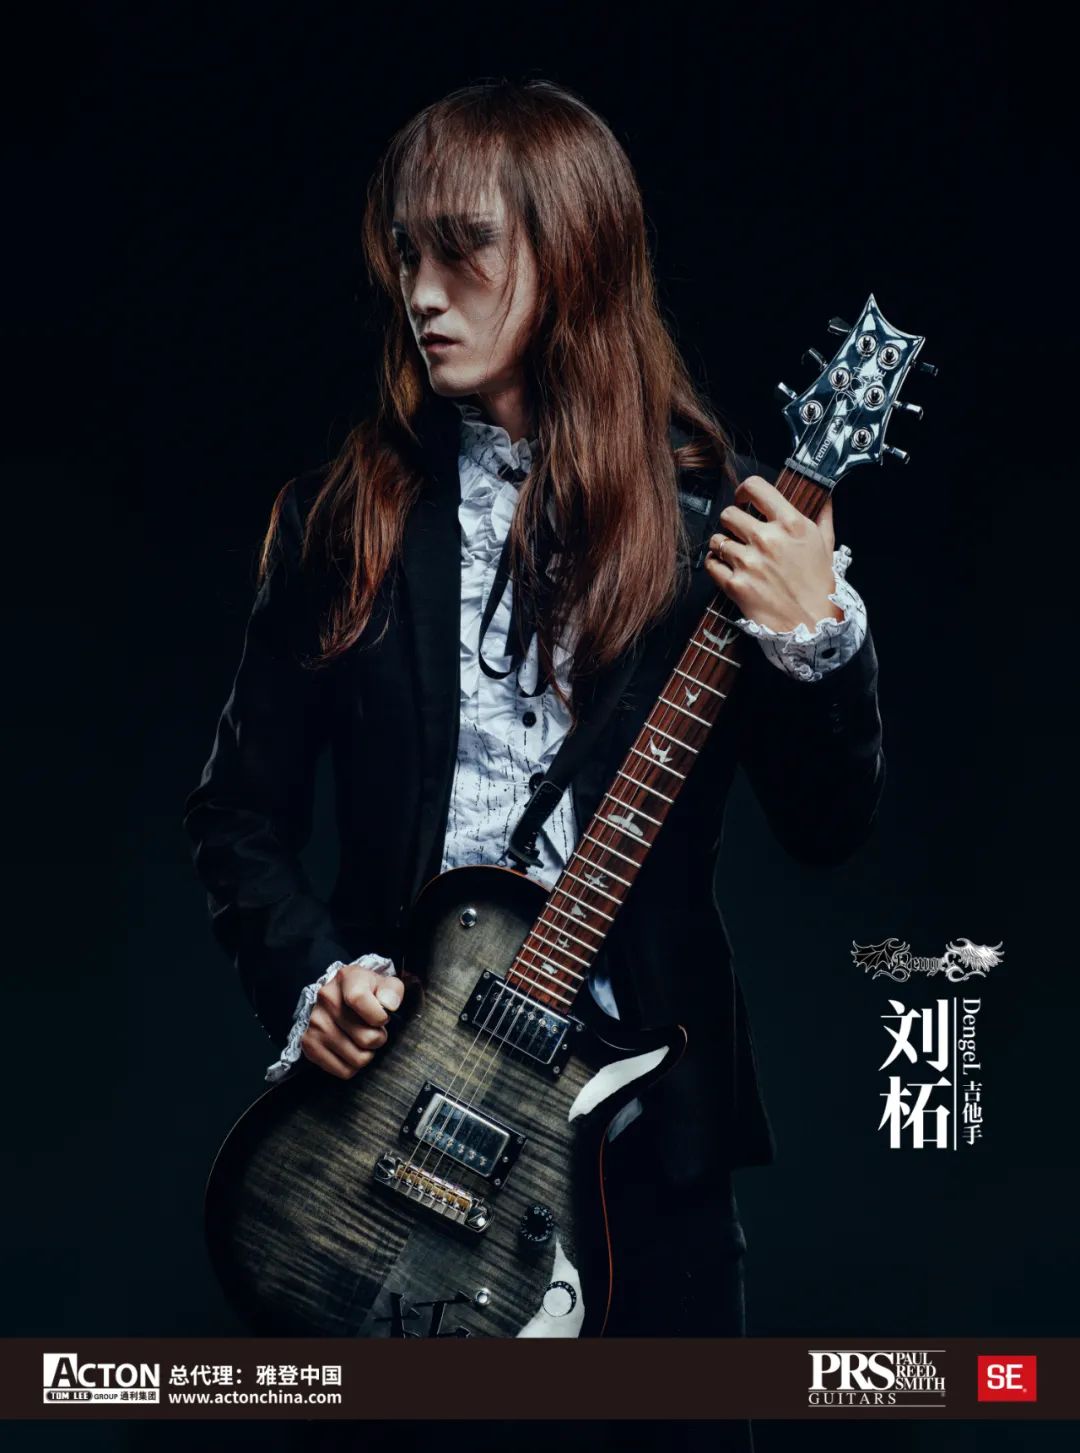 单舟DENGEL乐队吉它手刘柘、崔岩峥签约雅登中国成为国际著名电吉它品牌PRS推广大使